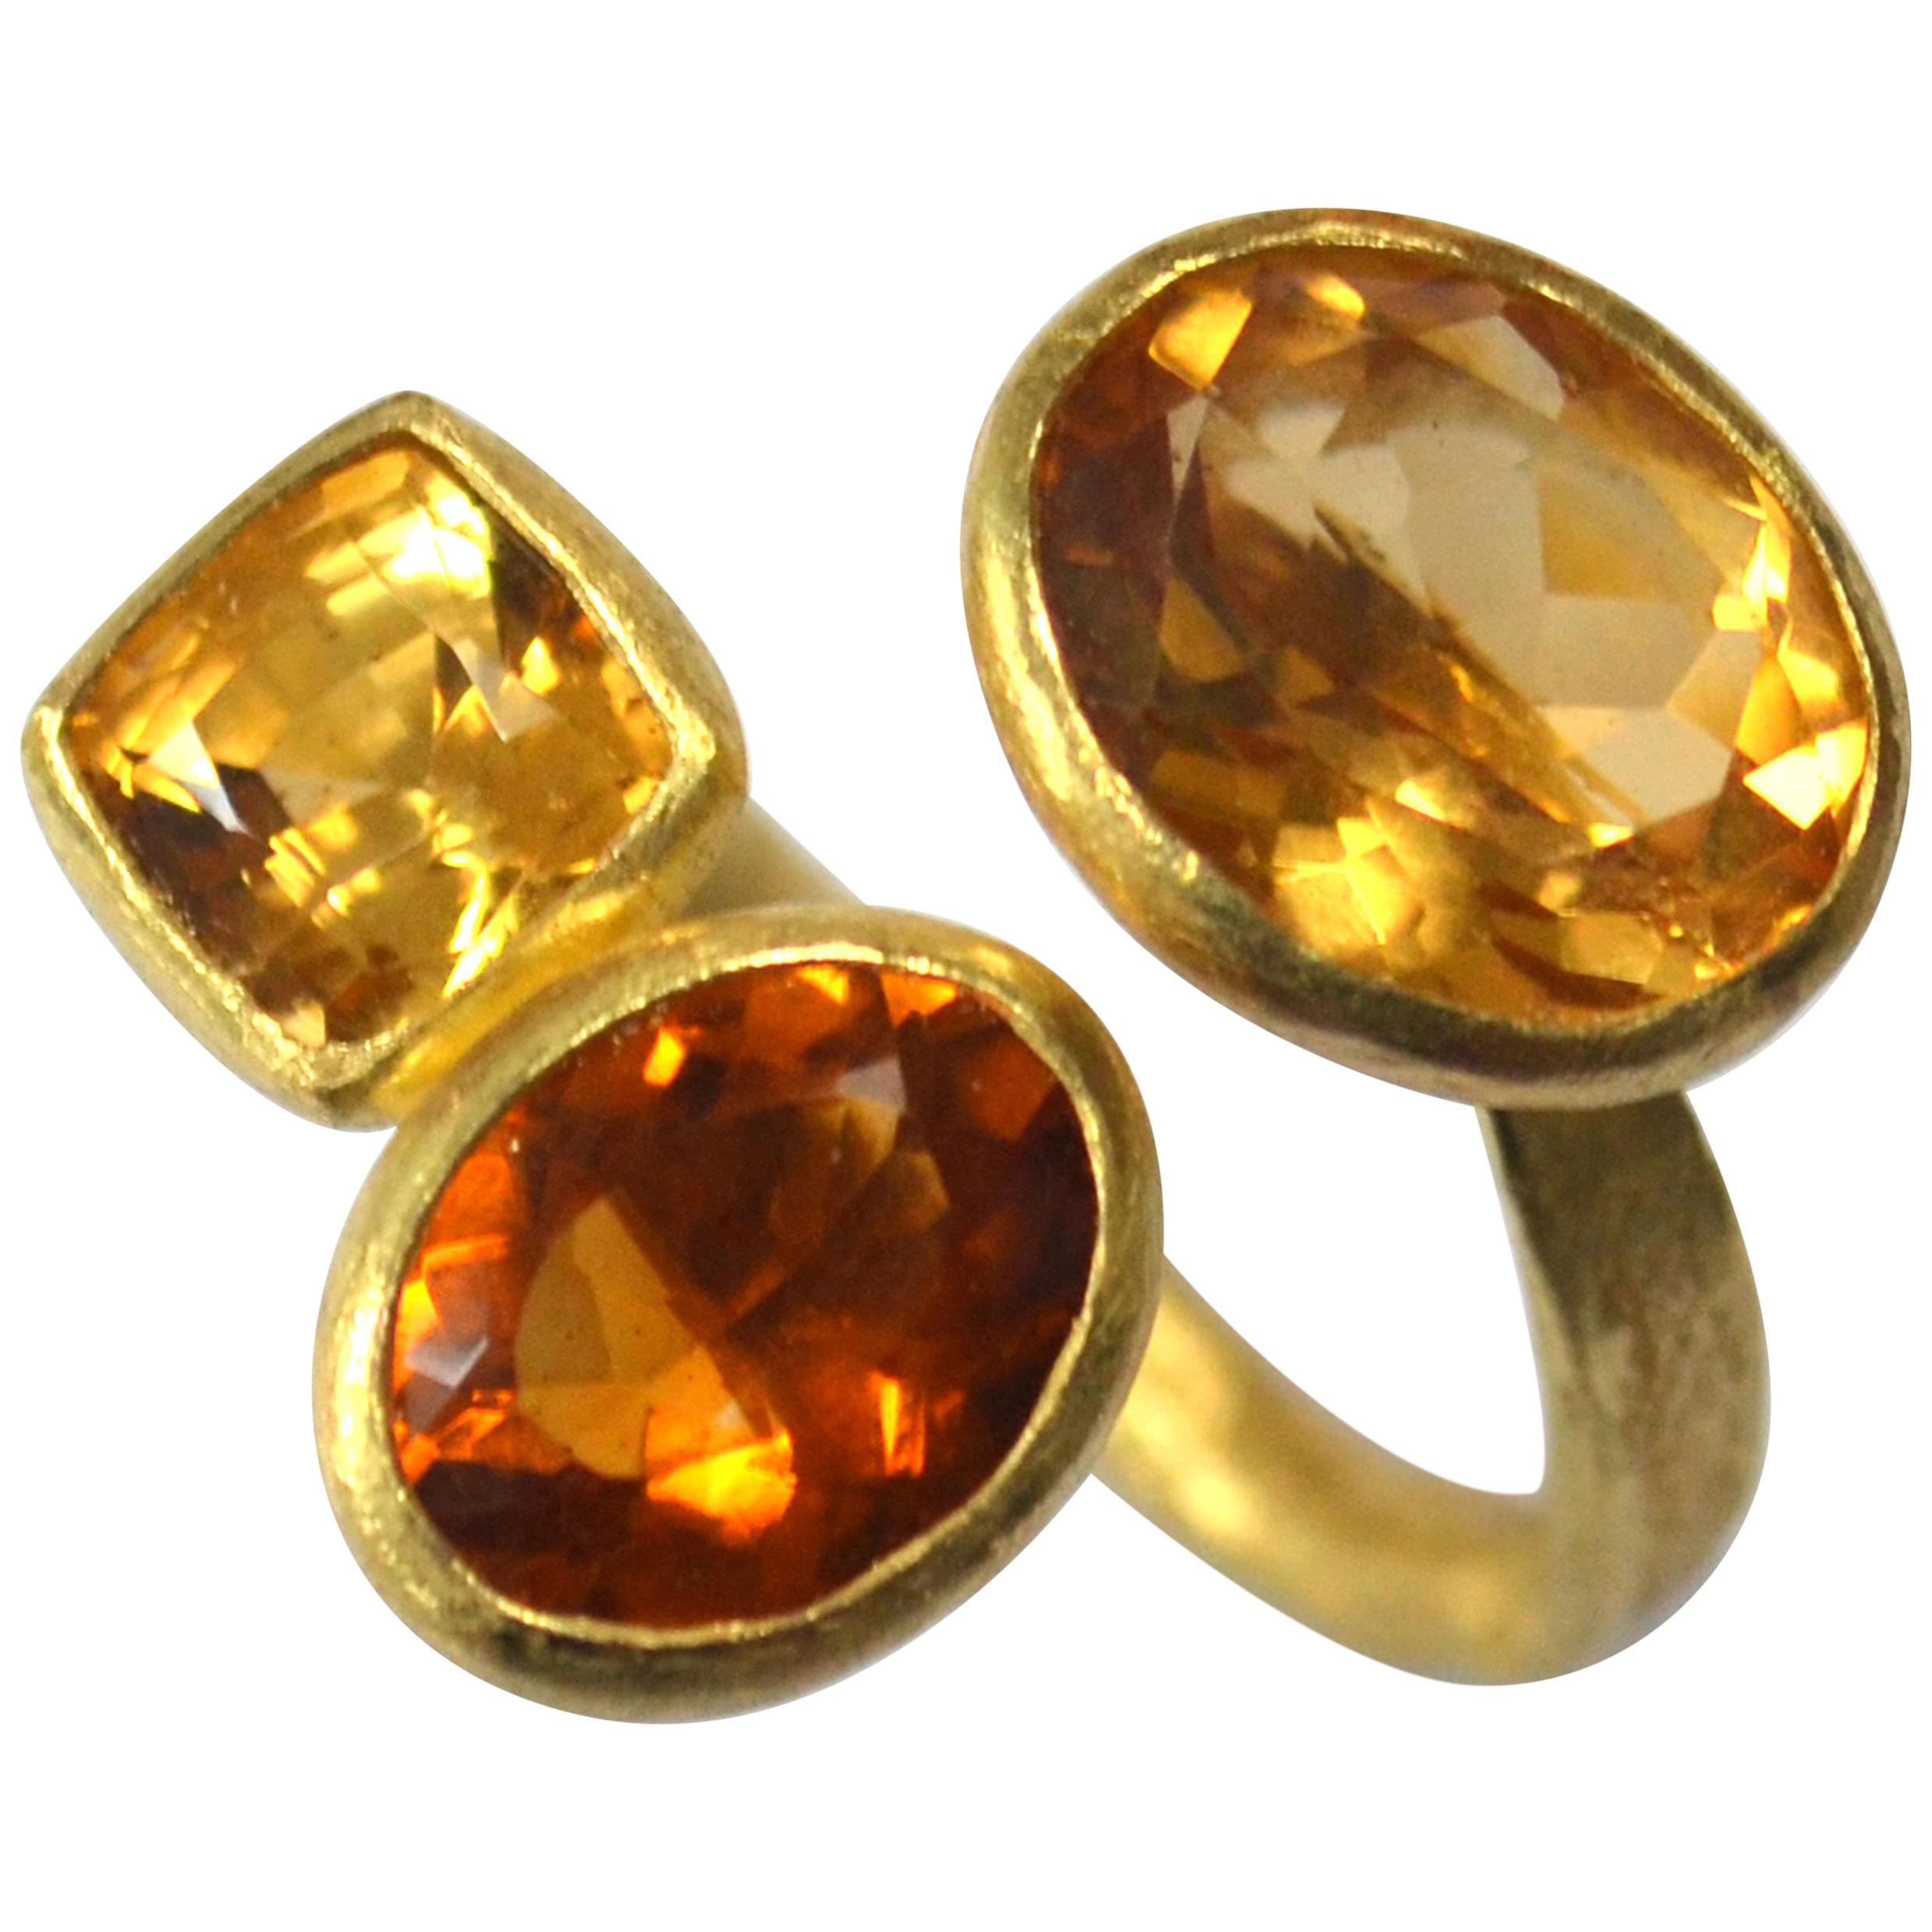 Three Citrine Cluster 18 Karat Gold Ring Handmade by Disa Allsopp